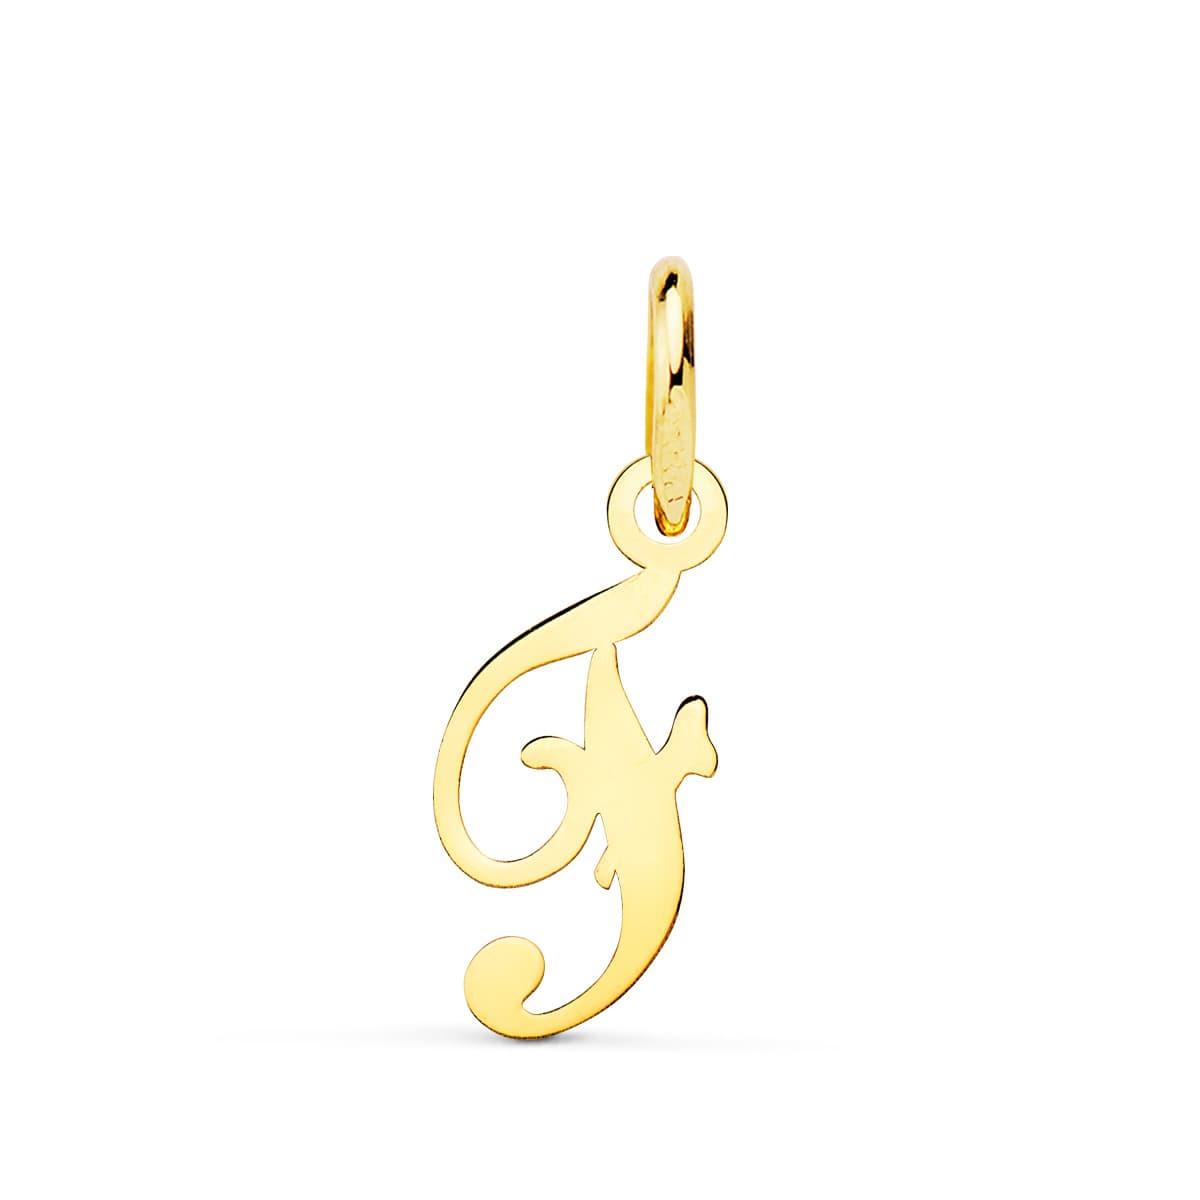 Pendentif ou jeton "Emprunte", lettre (initiale) calligraphiée en or jaune 18 carats - Maison Gabriel